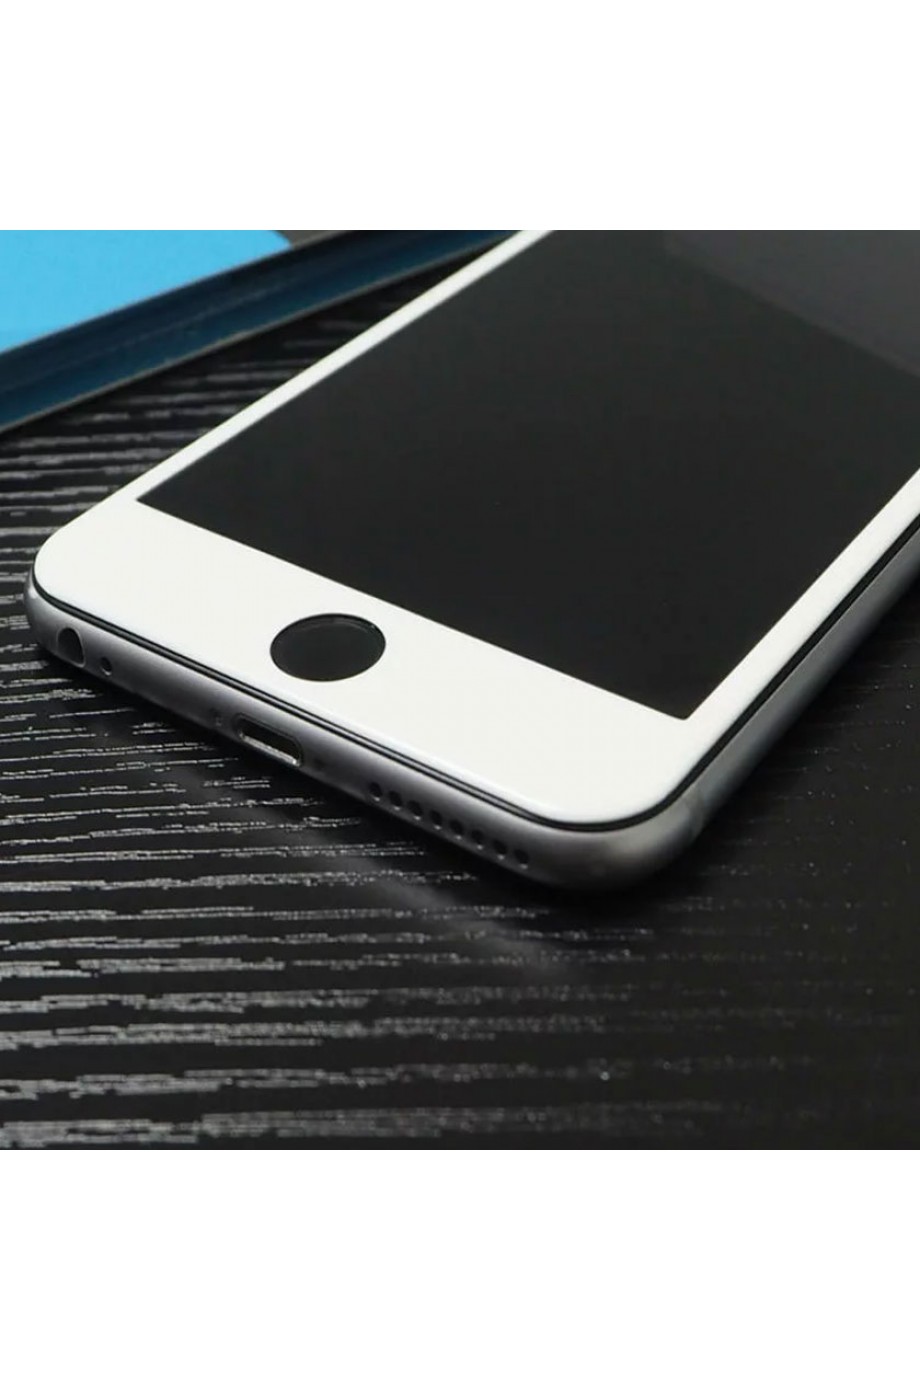 Защитное стекло 5D Mikomo для iPhone 8, белая рамка, полный клей